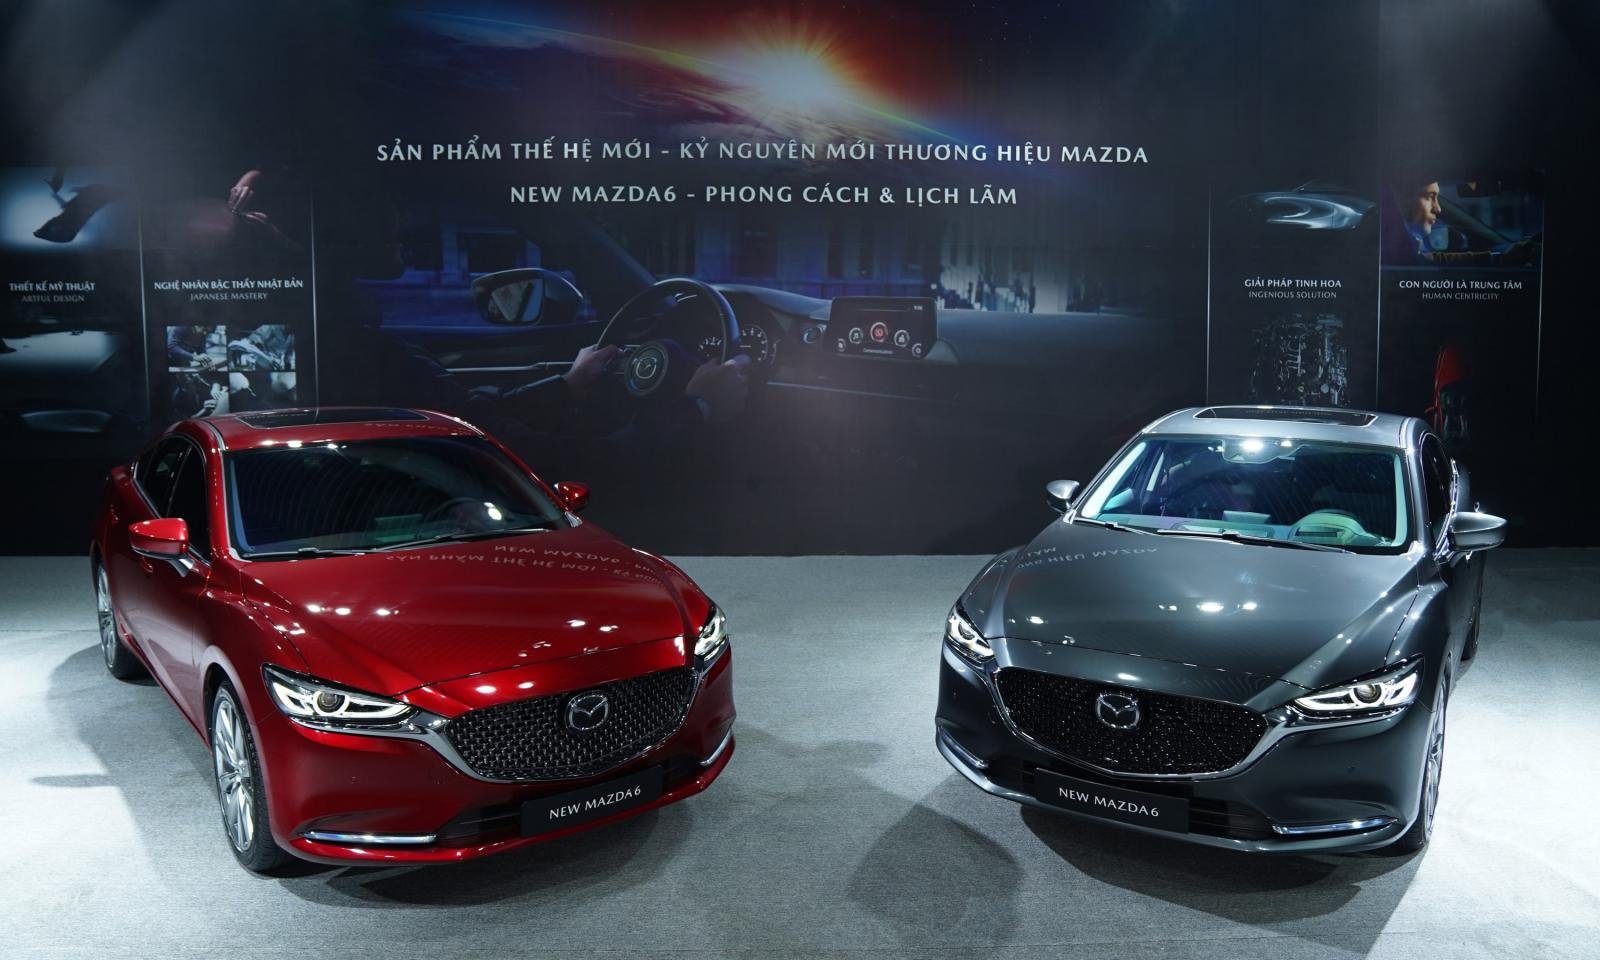 Bảng giá xe Mazda tháng 10/2020: Ưu đãi ‘nóng’ tới 30 triệu đồng, tặng loạt trang bị cực đỉnh cao ảnh 2